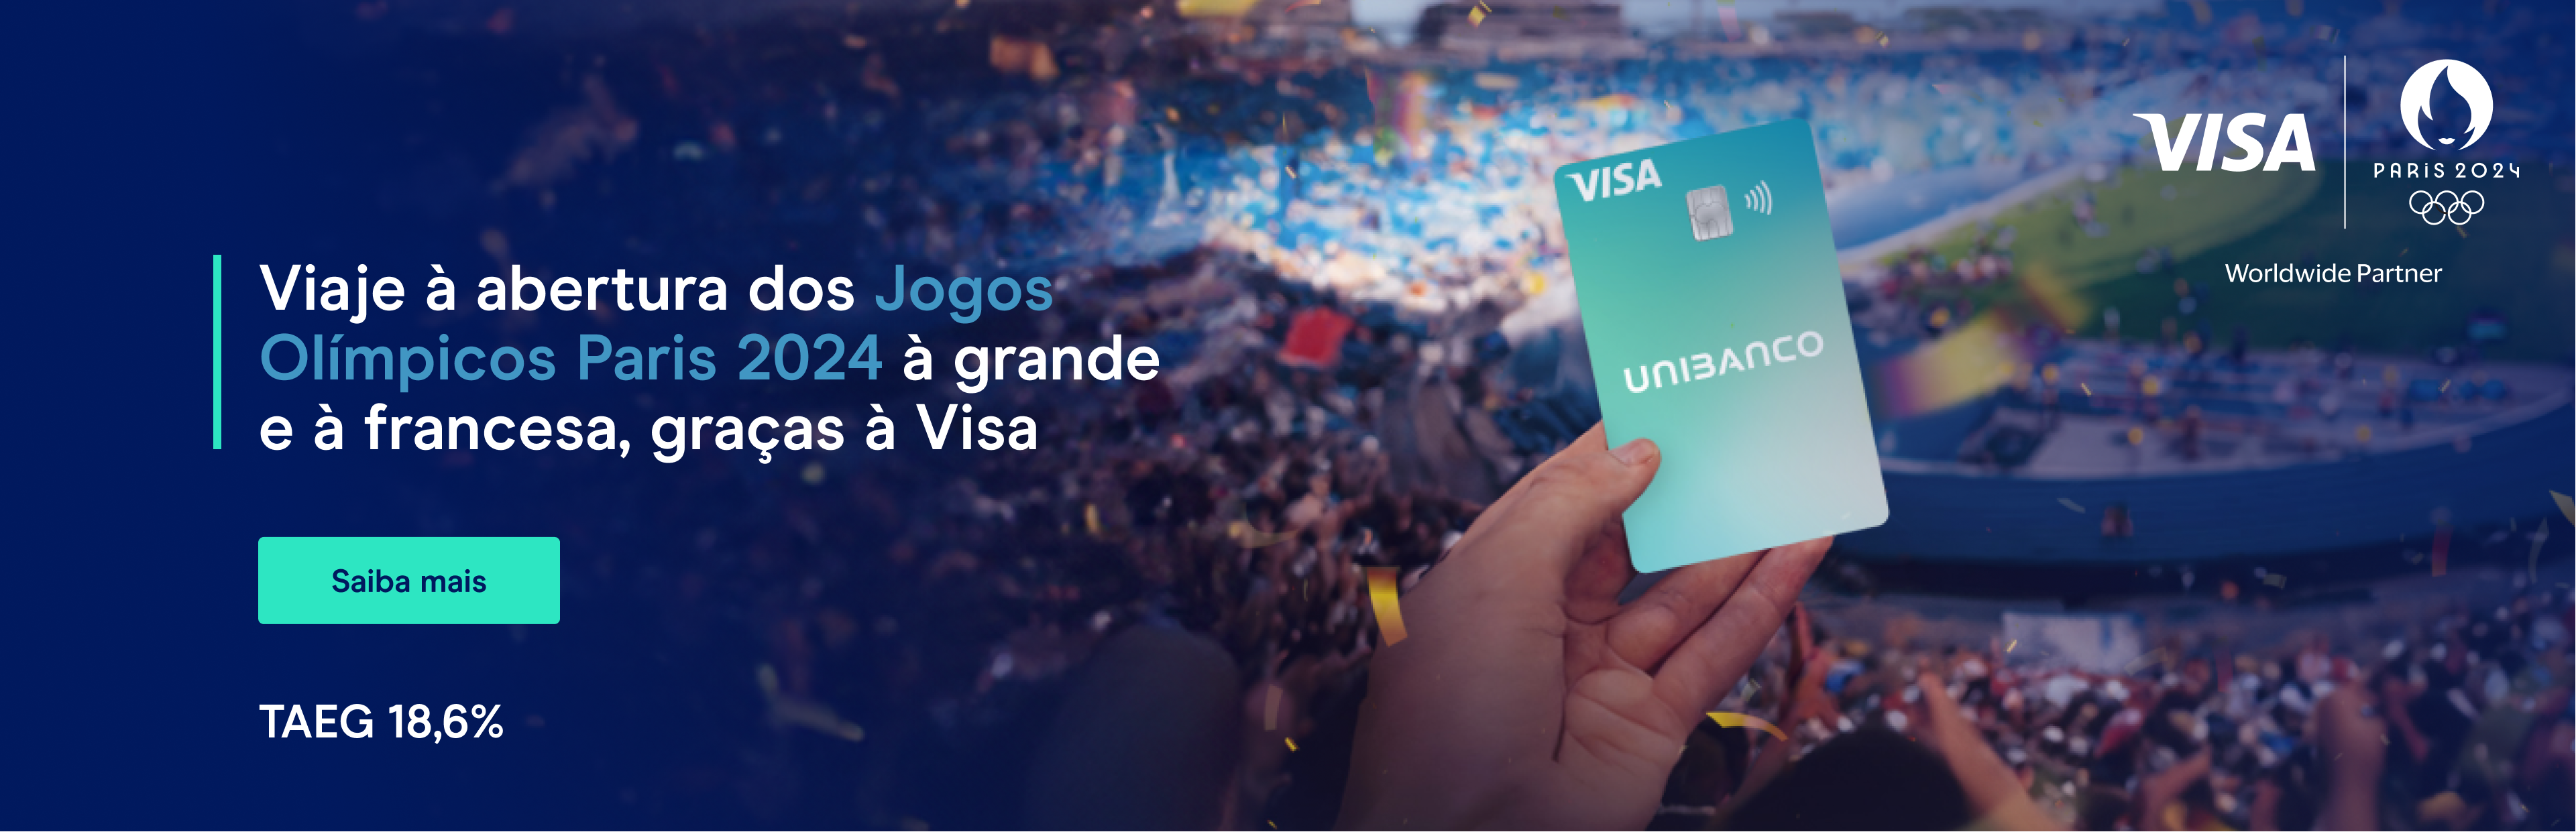 Sorteio de uma viagem aos Jogos Olímpicos com o Unibanco e a Visa